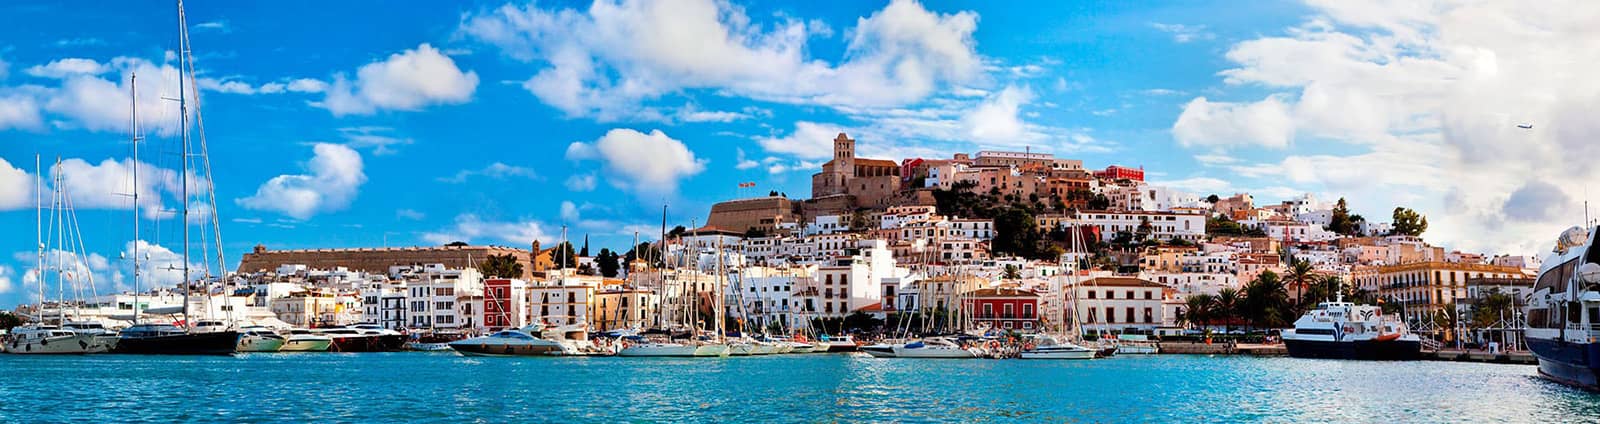 Przewodnik turystyczny po Ibizie i Formenterze